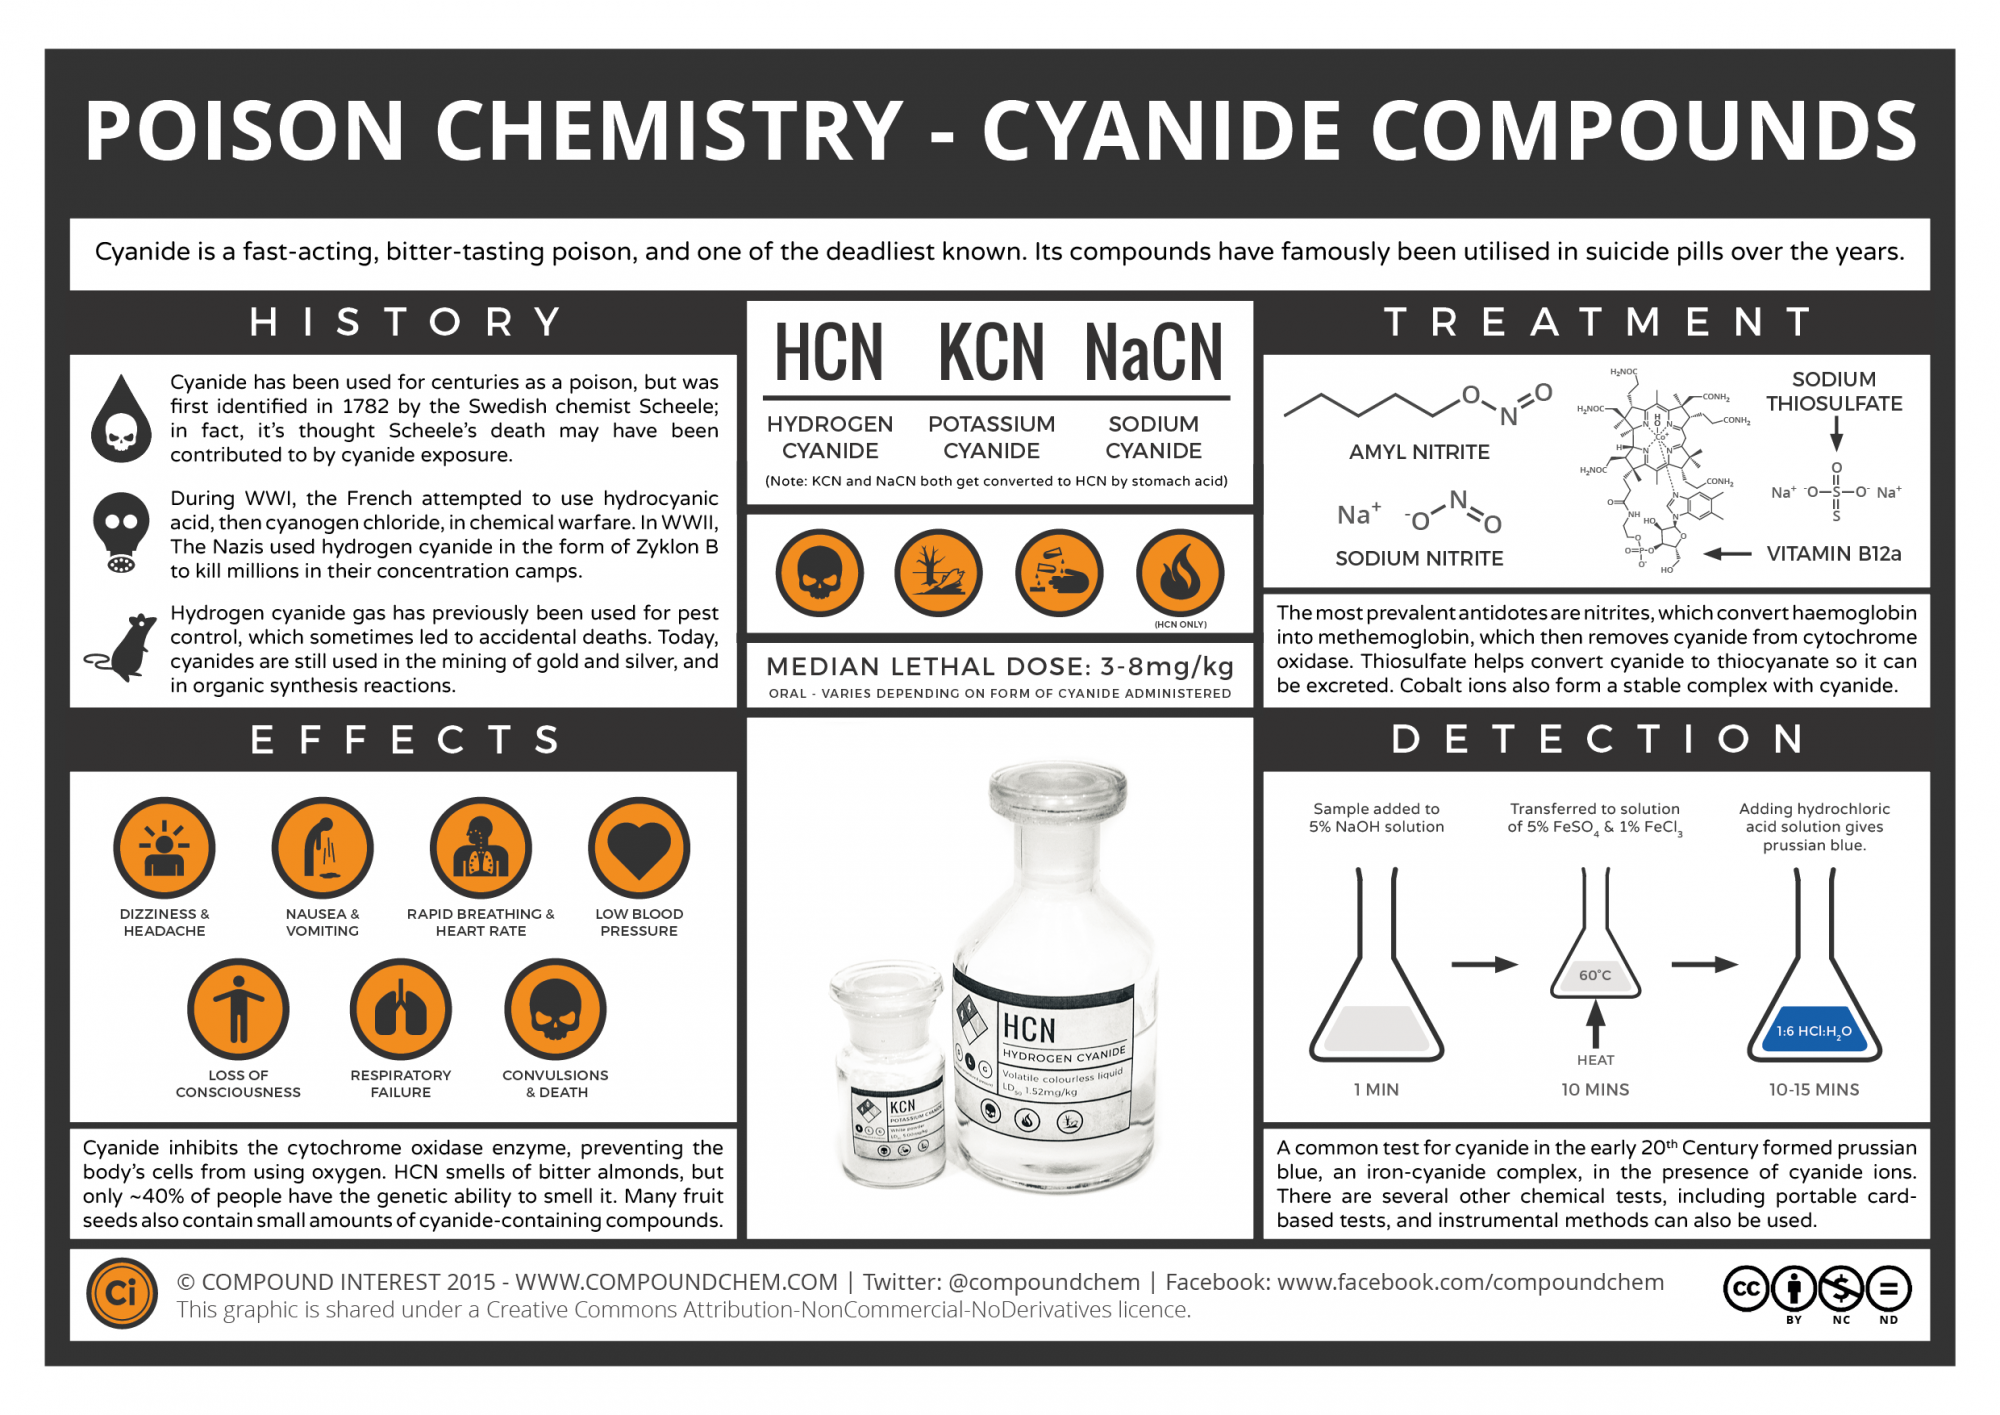 cyanide antidote kit price